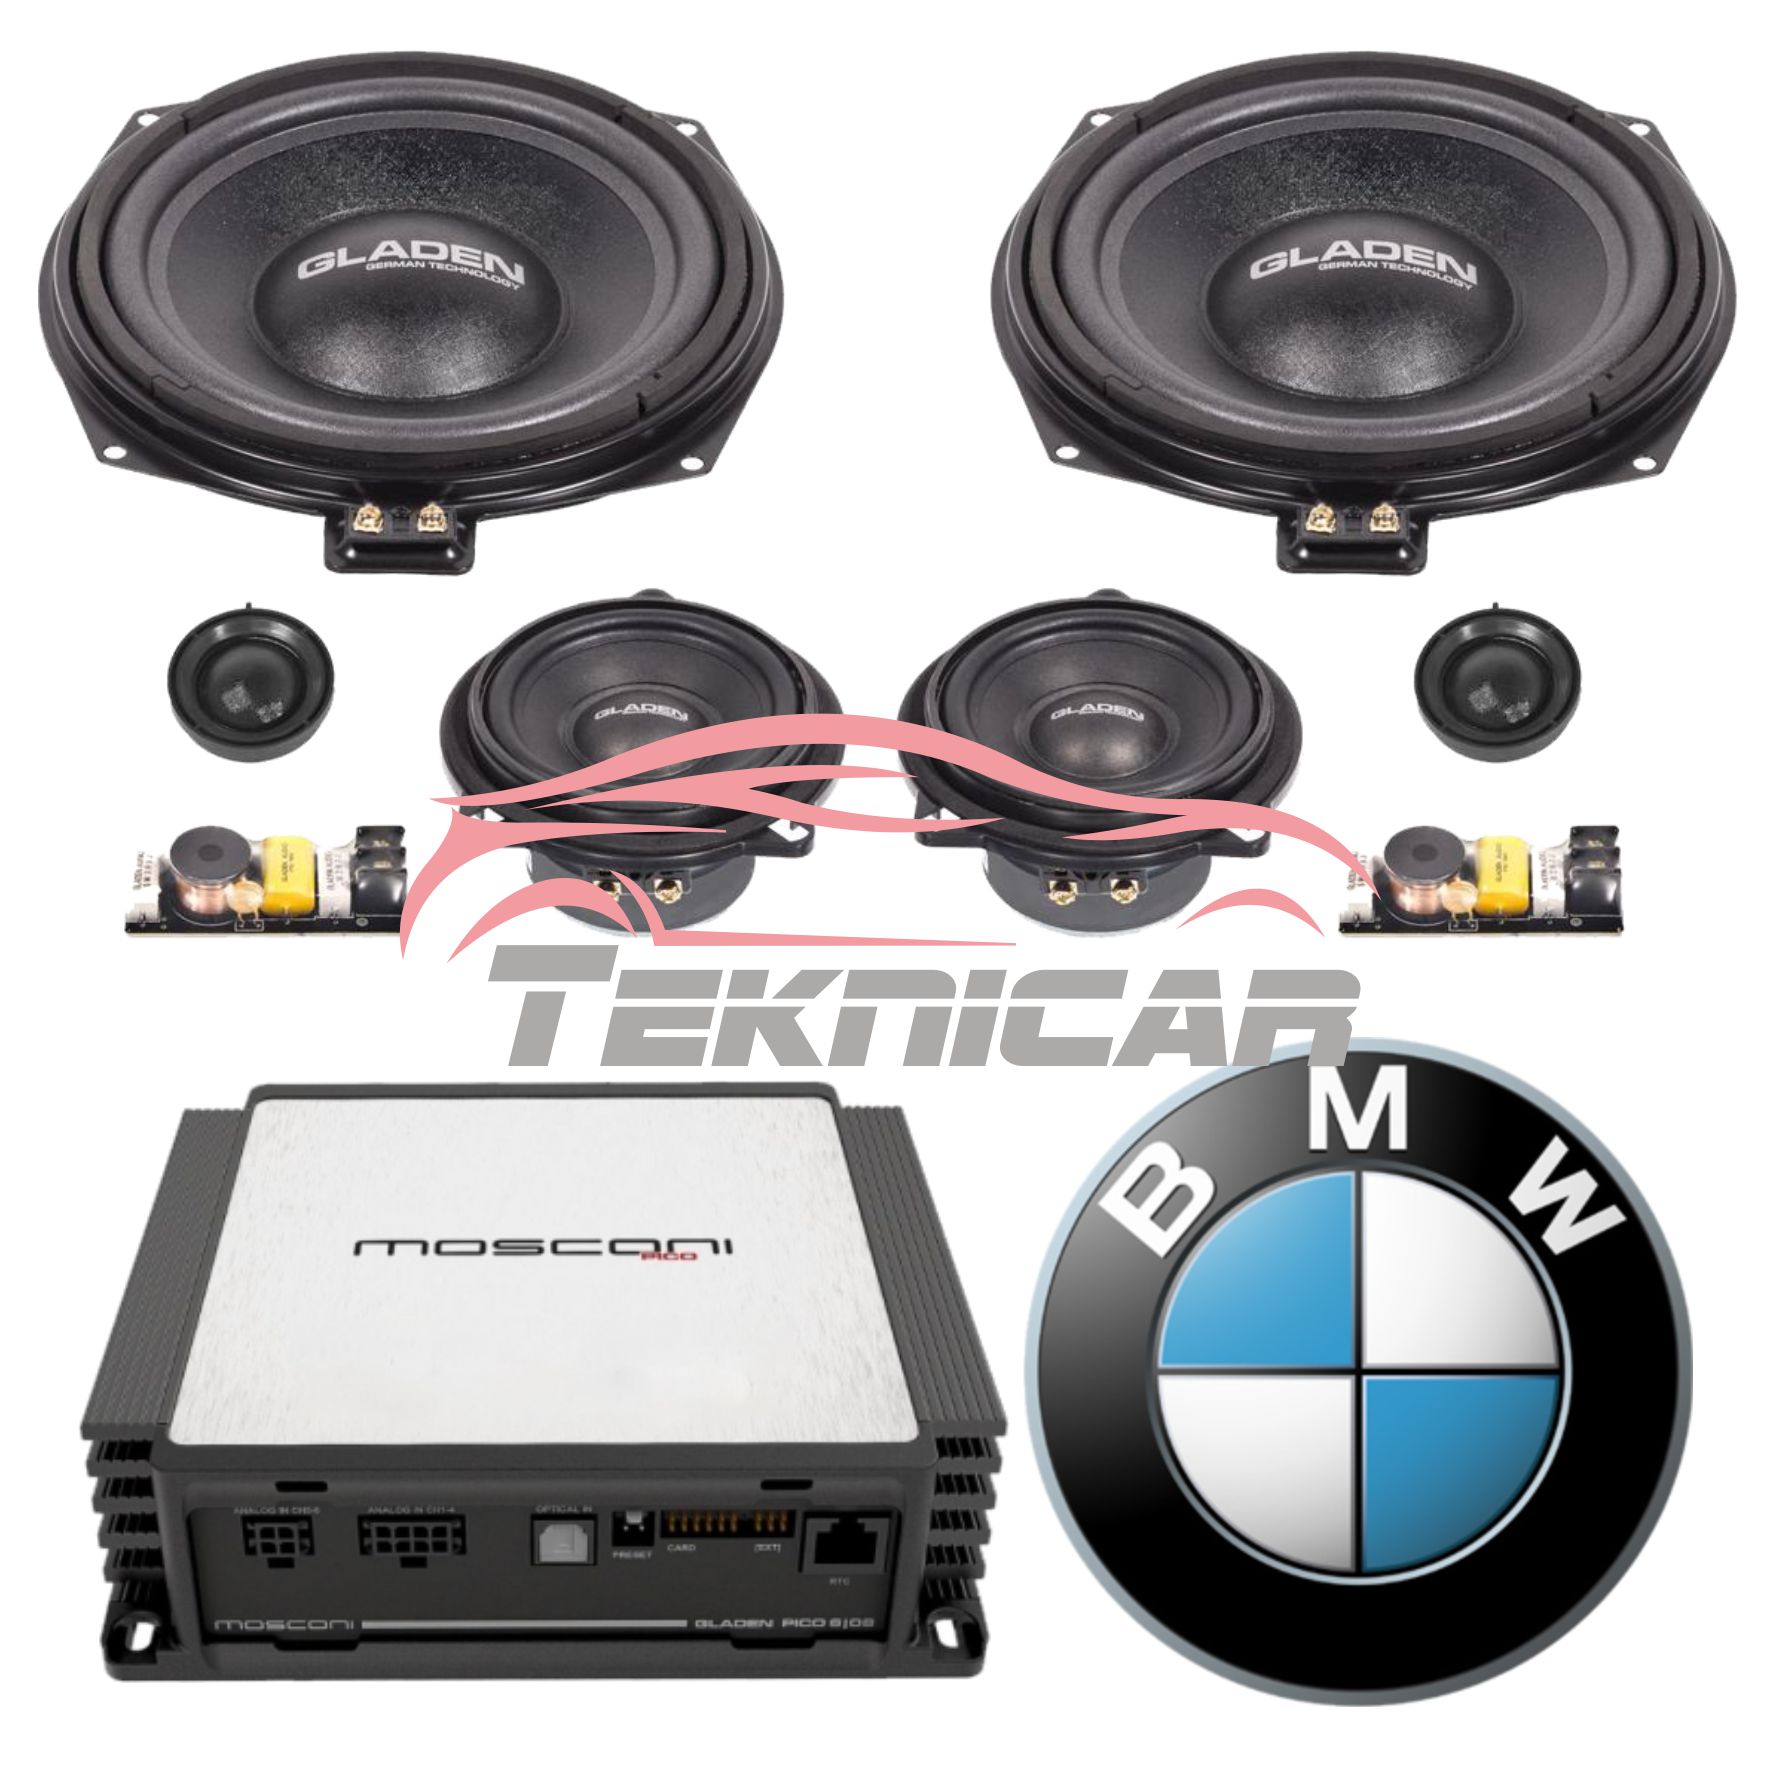 Conjunto sonido BMW Gladen - Mosconi Pico 6/8DSP front